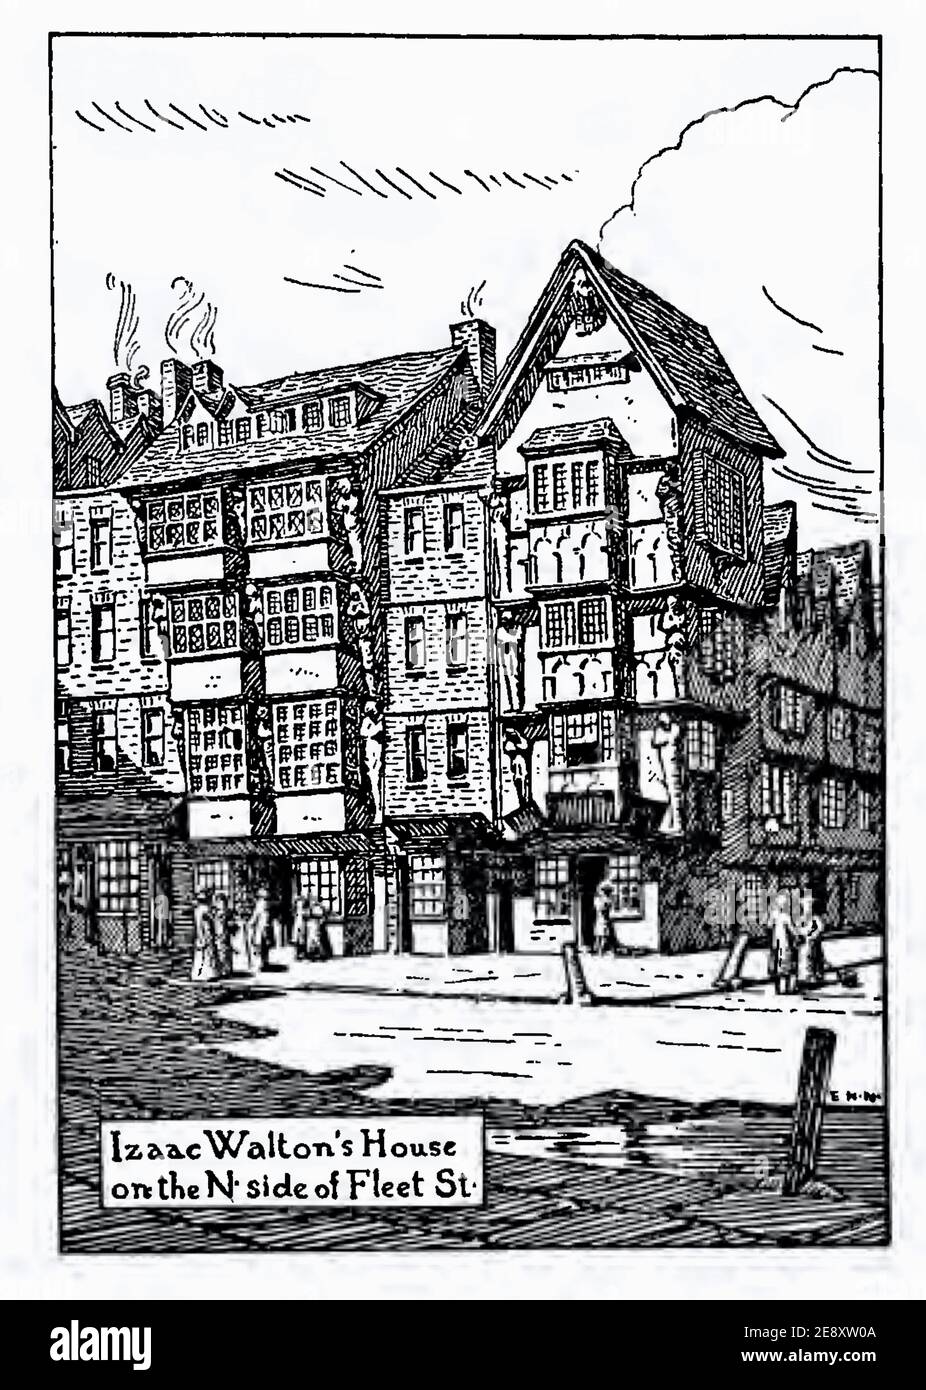 Vintage Edmund H Nouvelle illustration de la maison d'Isaac Walton on Côté nord de Fleet Street Banque D'Images